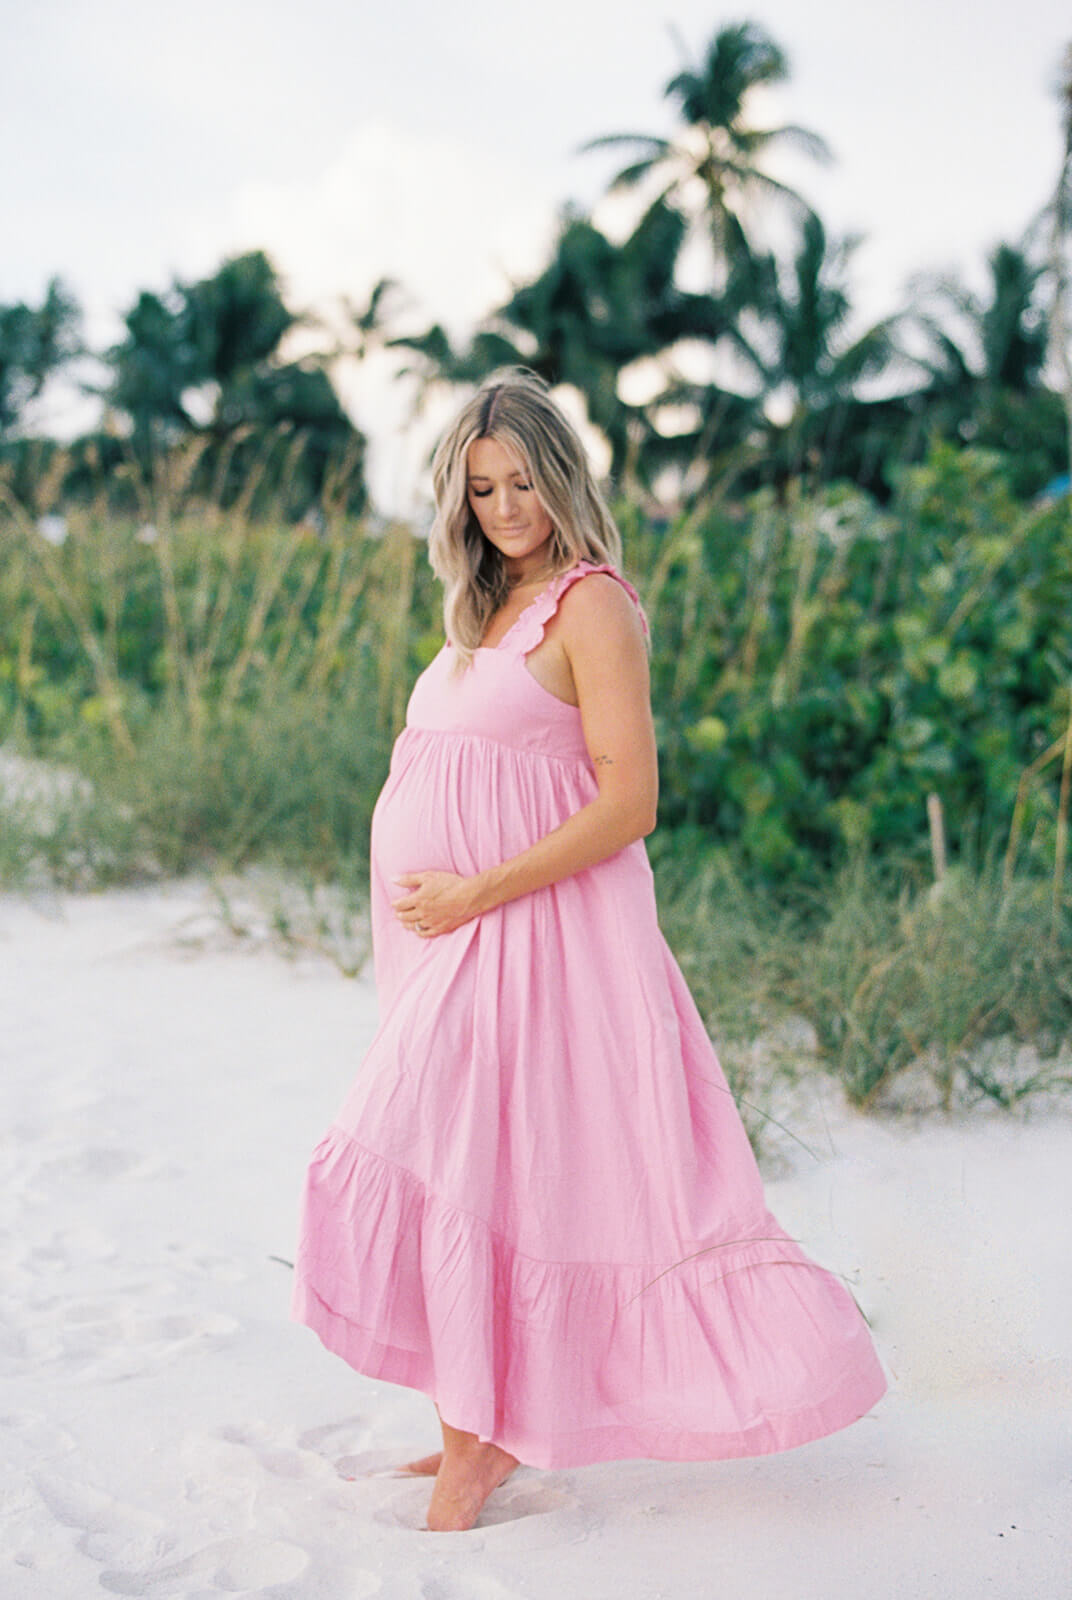 Naples Photographer | Beach Maternity Photos